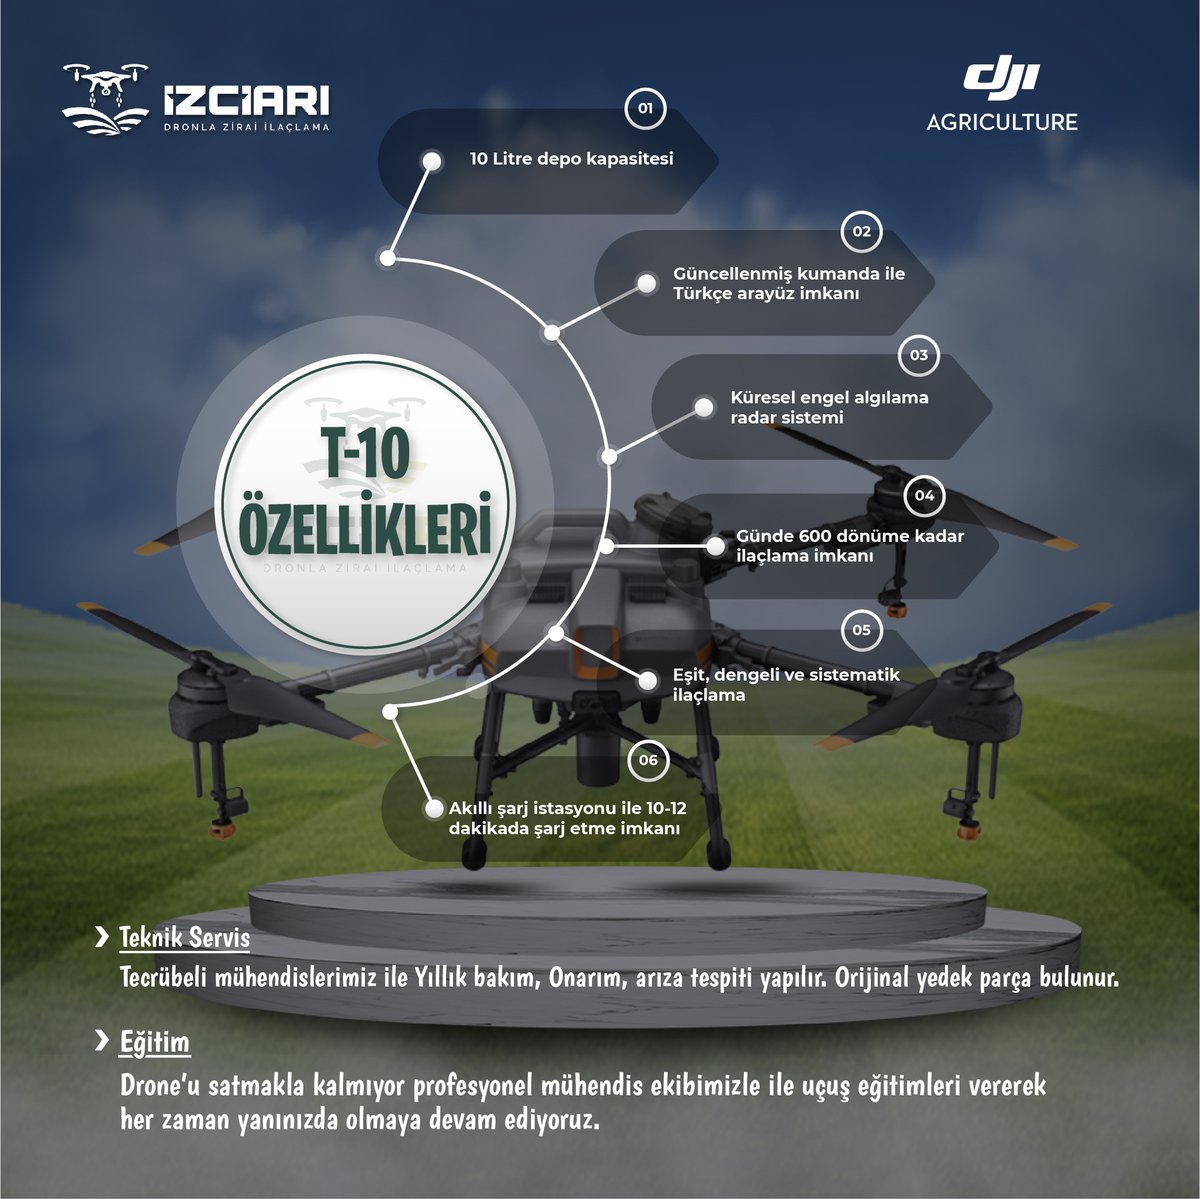 Profesyonel ekibimizin eğitim ve teknik destekleri ile DJI T-30 ve T-10 Zirai Dronları stoklarda. 
Öğrenene kadar eğitimimizde hediye.. 🙃
☎️ 0543 187 63 63 / 0553 507 36 33
🌐izciari.com
@DJIGlobal

#tarım #droneilaçlama #ziraat  #dji #droneileilaçlama #İzciArı